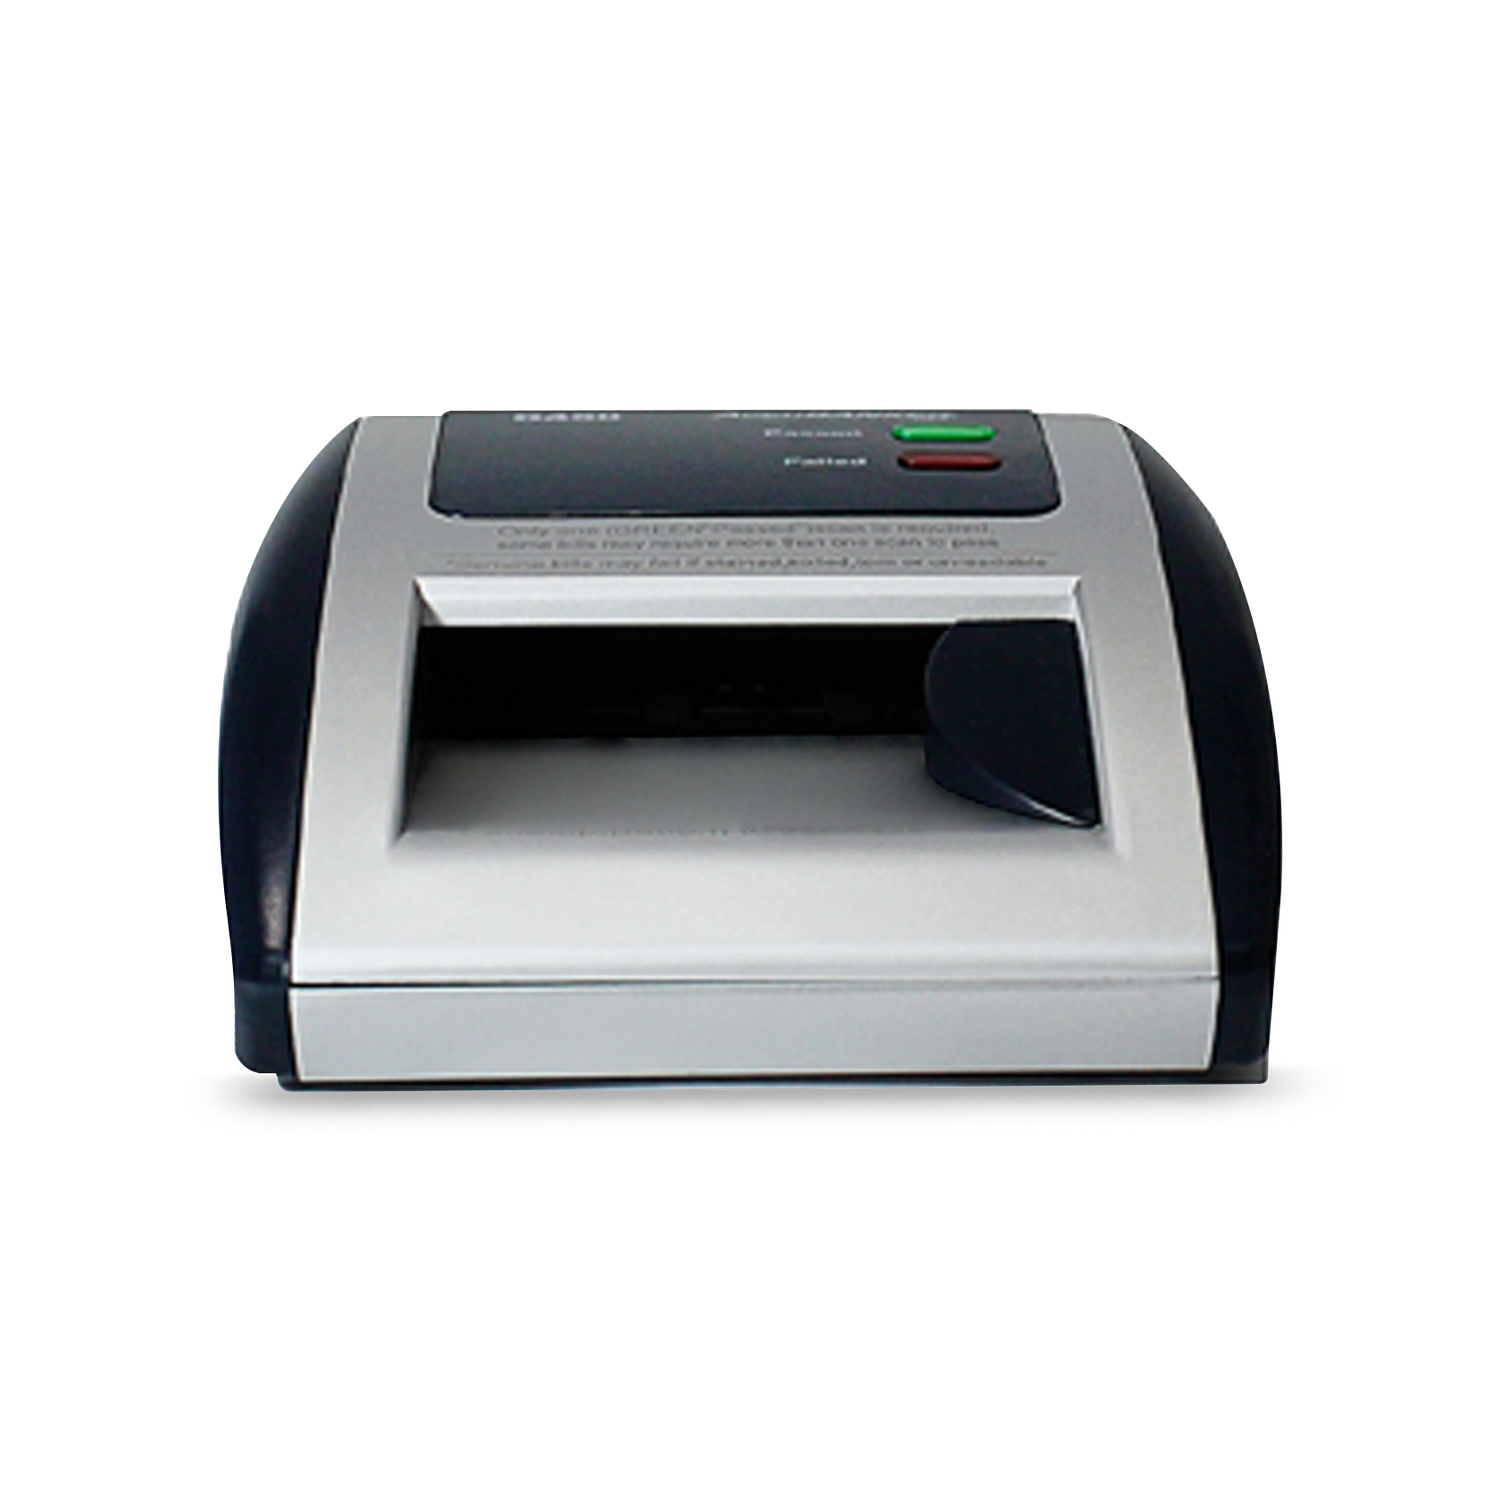 AccuBANKER D450 - Máquina detector de billetes falsificados de 5 puntos,  grado minorista, listado UL (paquete de 3)